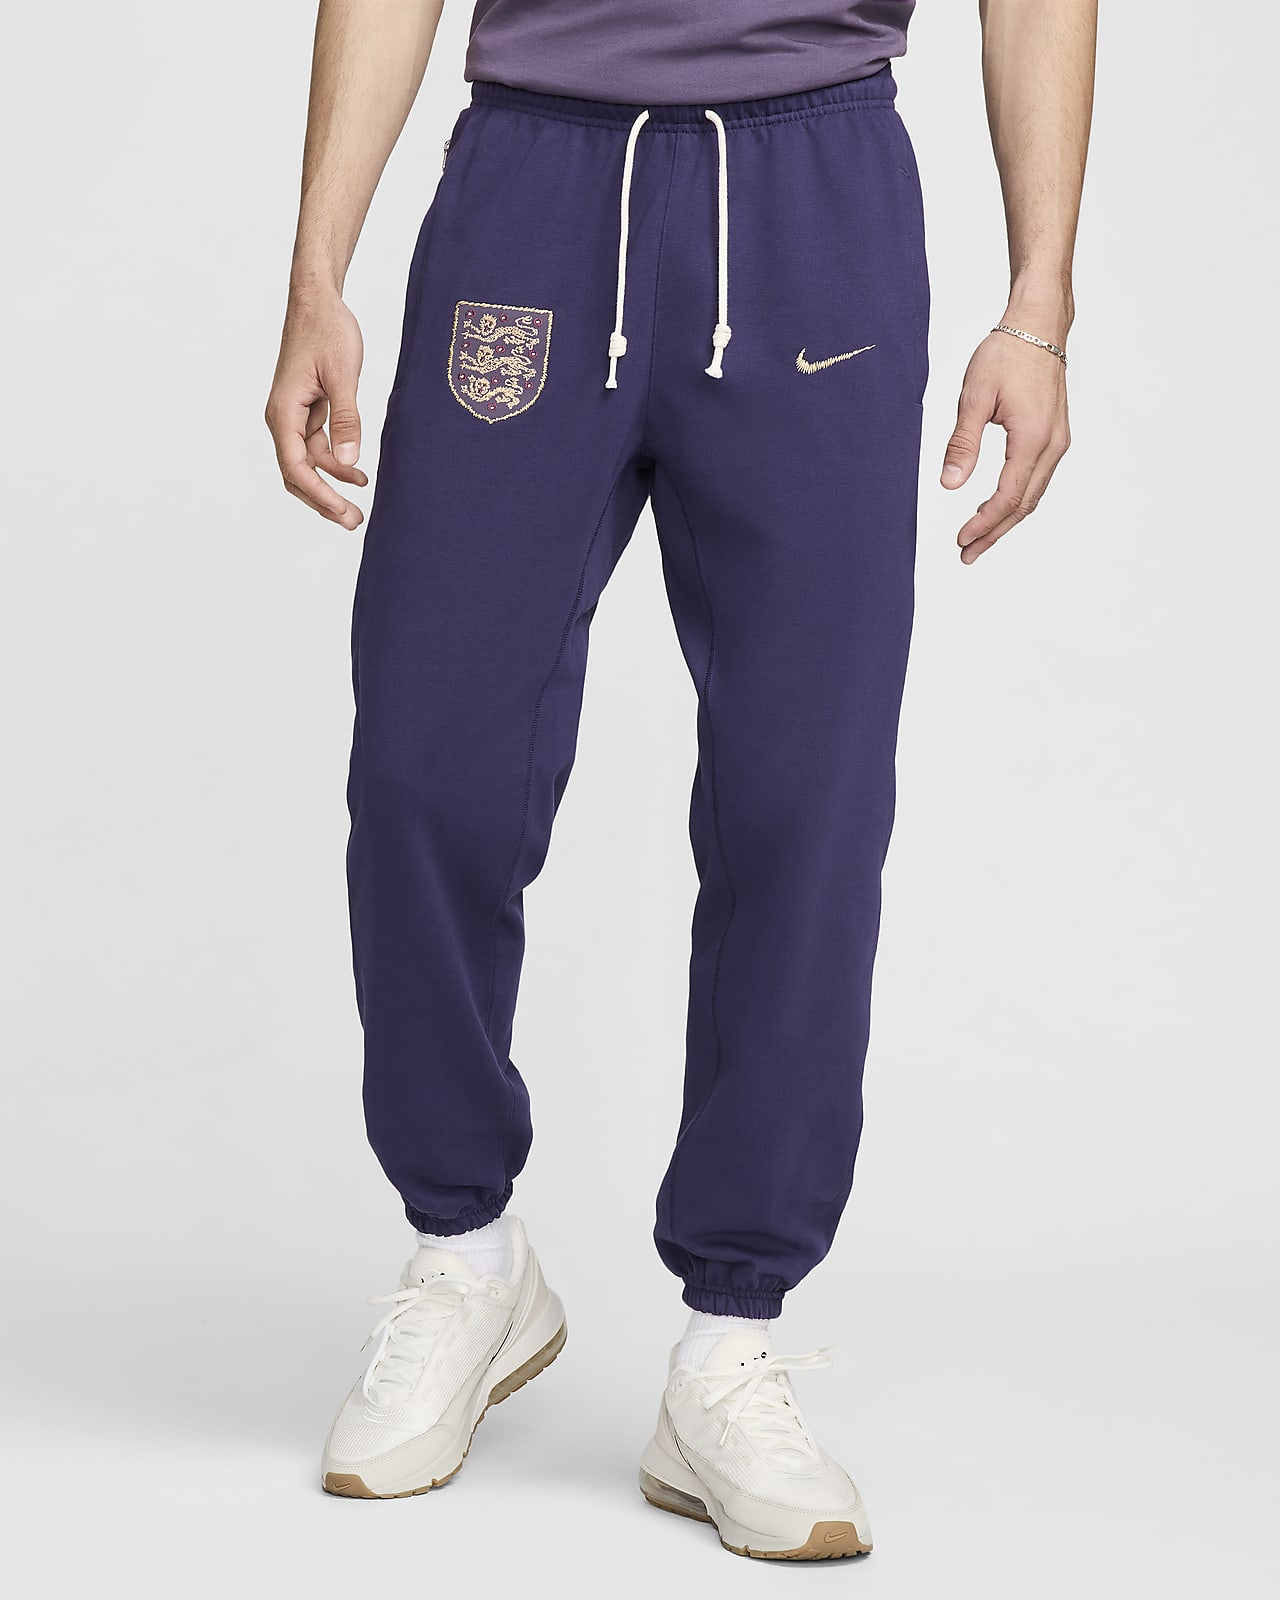 İngiltere Standard Issue Nike Erkek Futbol Eşofman Altı